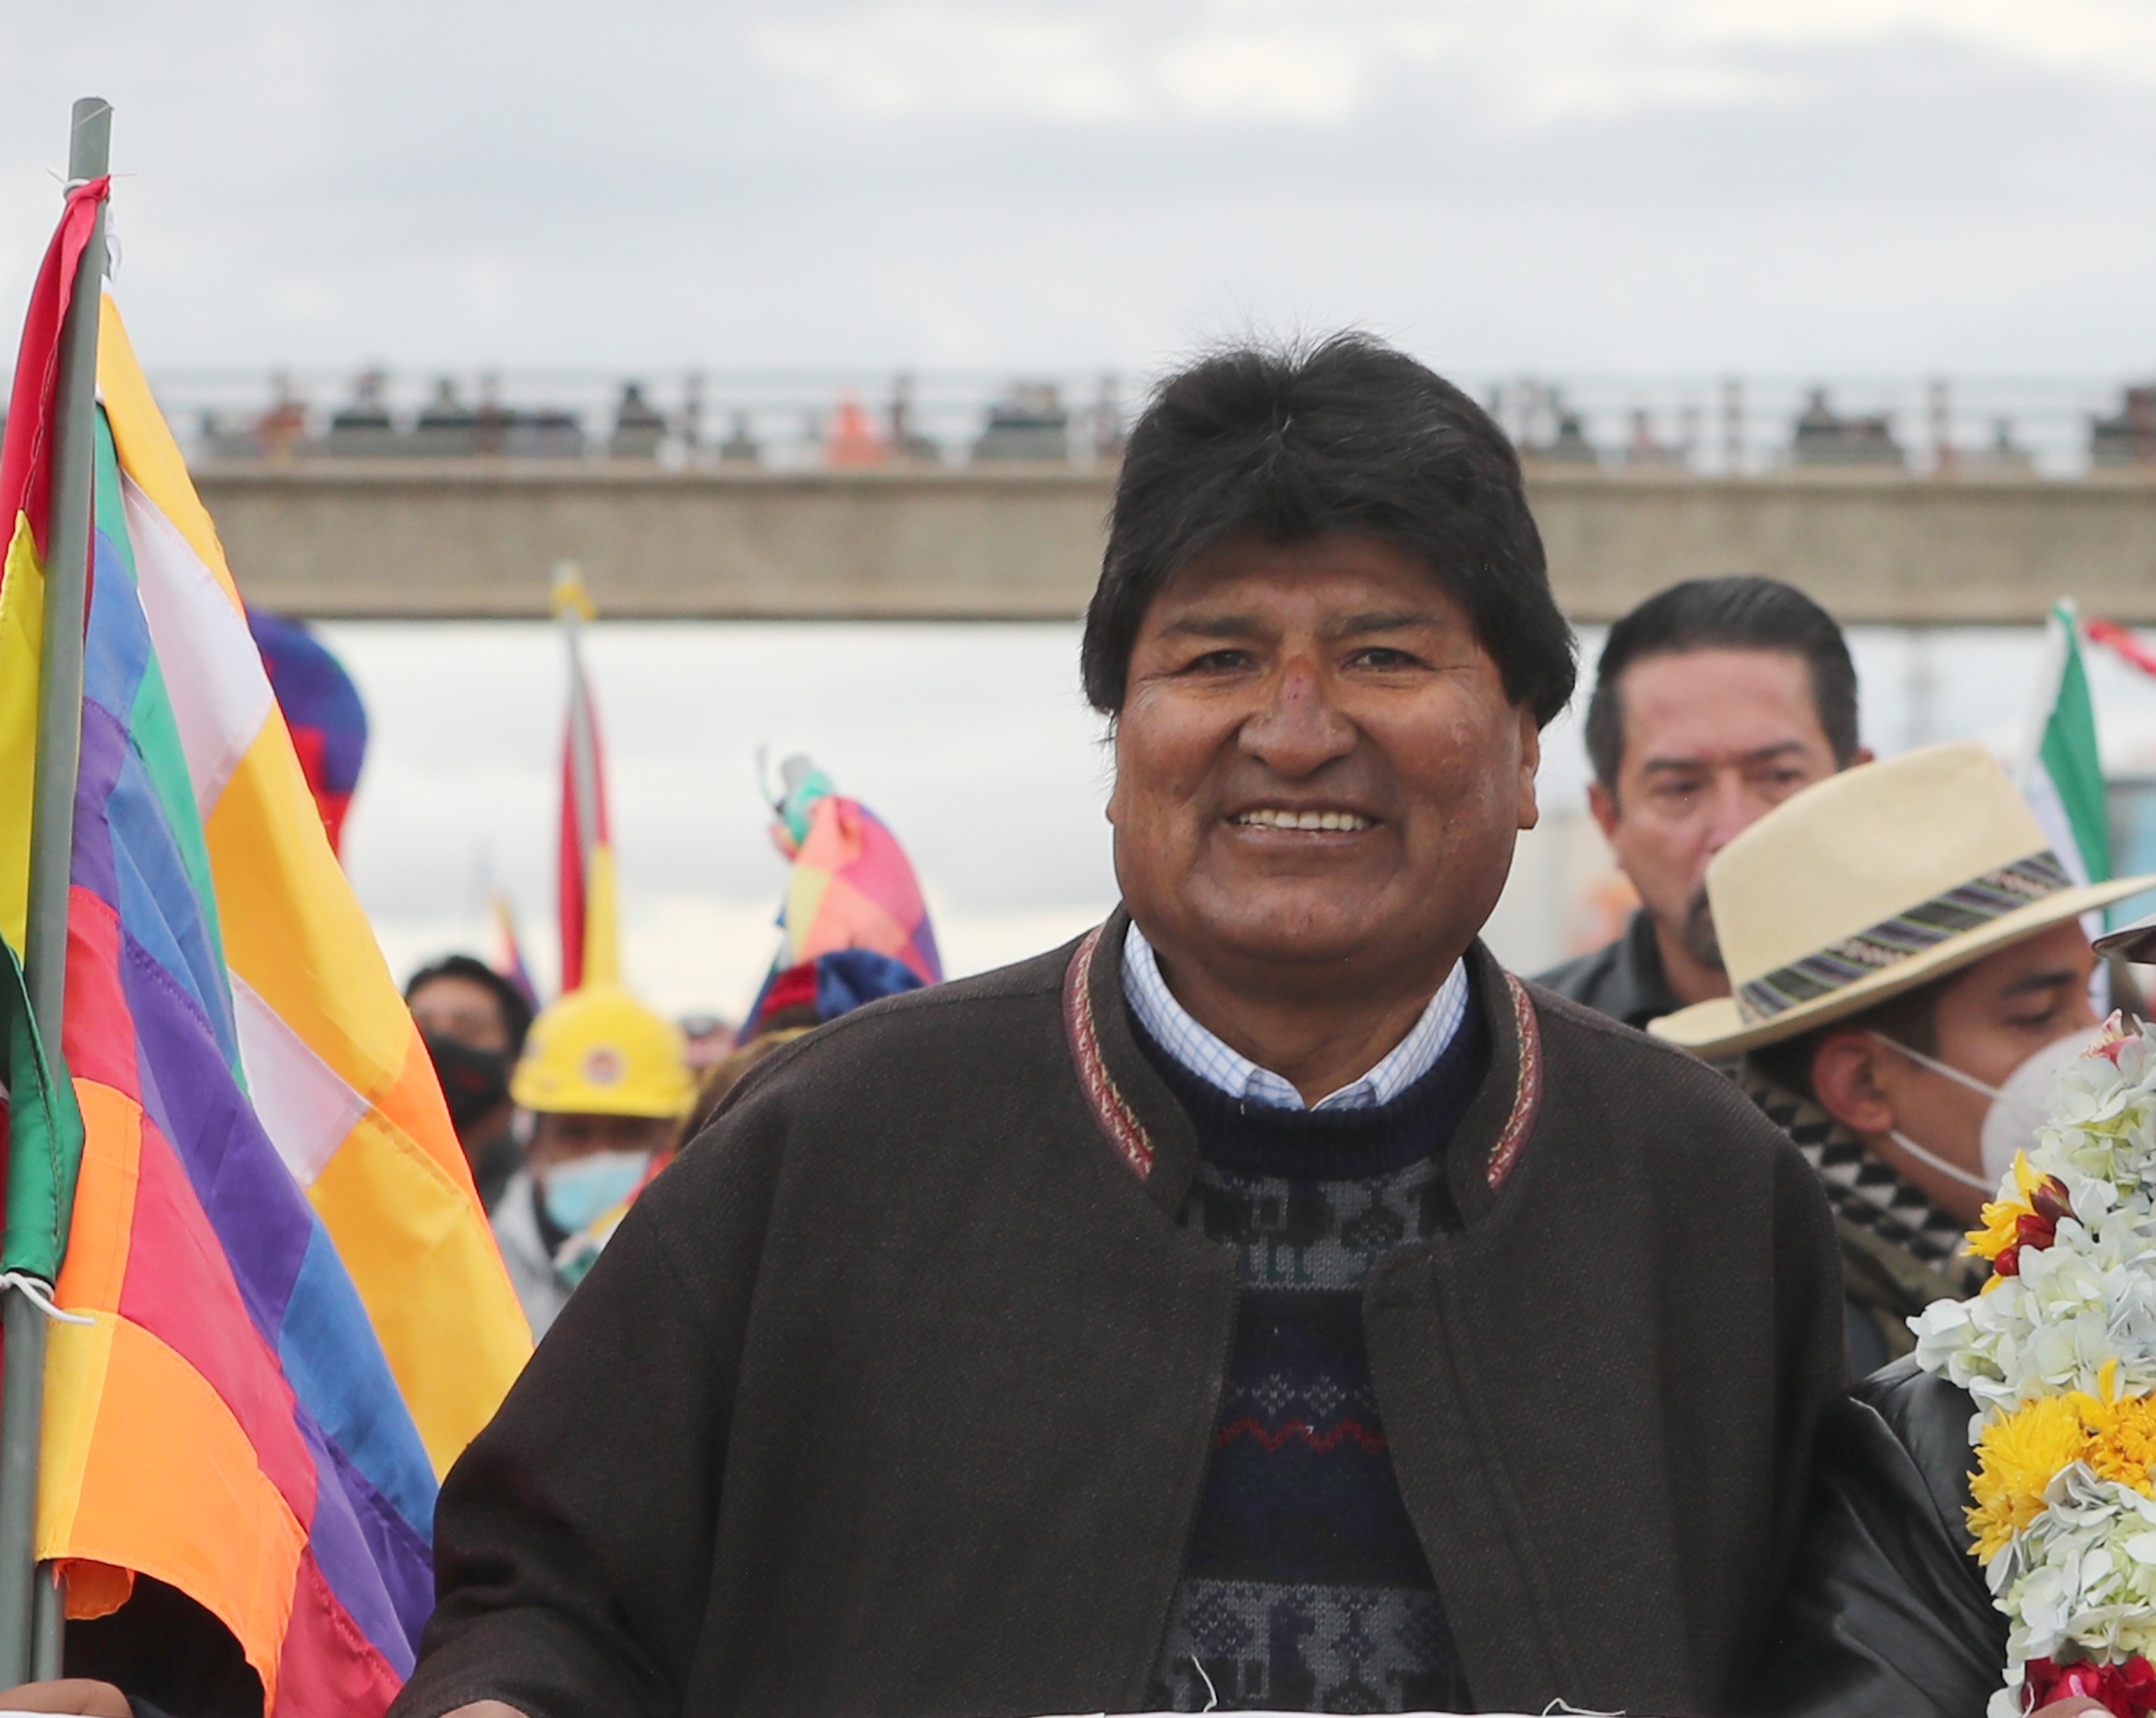 El ex mandatario boliviano y presidente del partido oficialista Evo Morales escribió en Twitter que “la derecha golpista, con ayuda de algunos traidores, usa documentos falsos" (EFE/Martin Alipaz)
